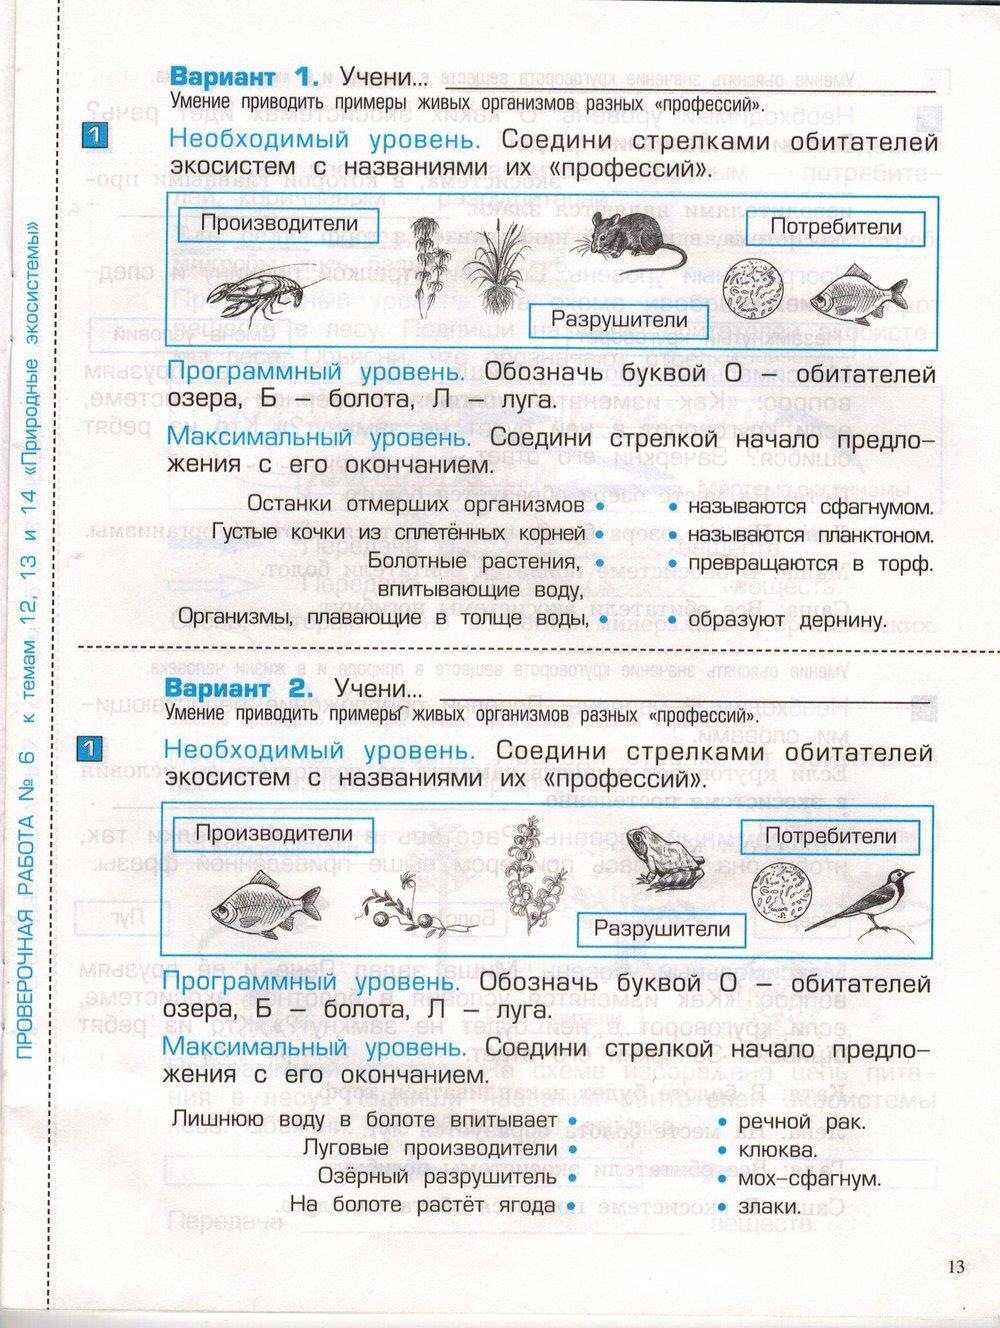 гдз 3 класс проверочные и контрольные работы часть 1 страница 13 окружающий мир Вахрушев, Бурский, Родыгина